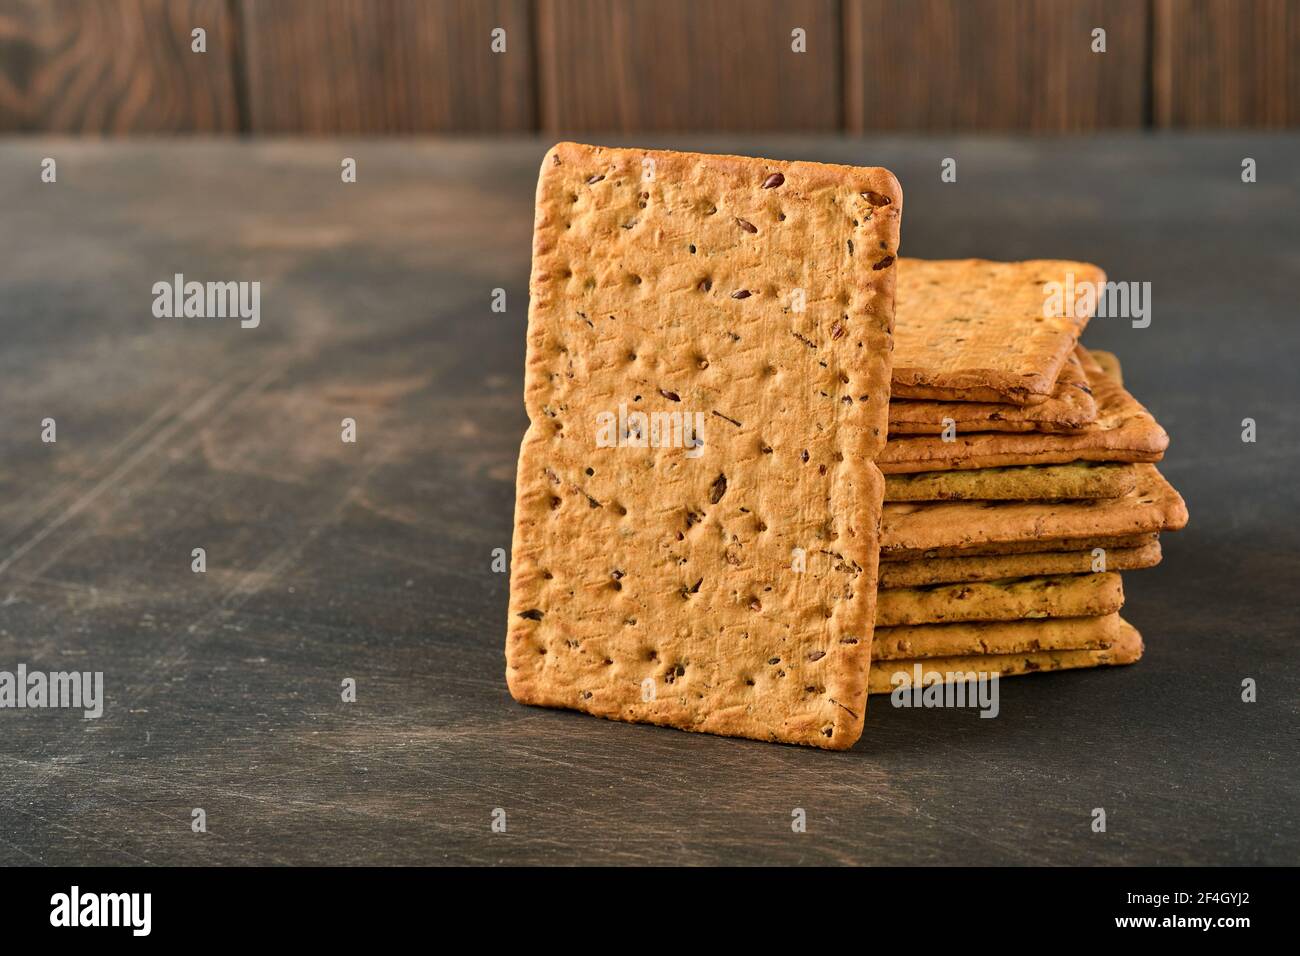 Cracker con semi di lino e crusca di avena forma rettangolare per una dieta sana, dietetica ed equilibrata su fondo di legno scuro. Snack per una corretta alimentazione Foto Stock